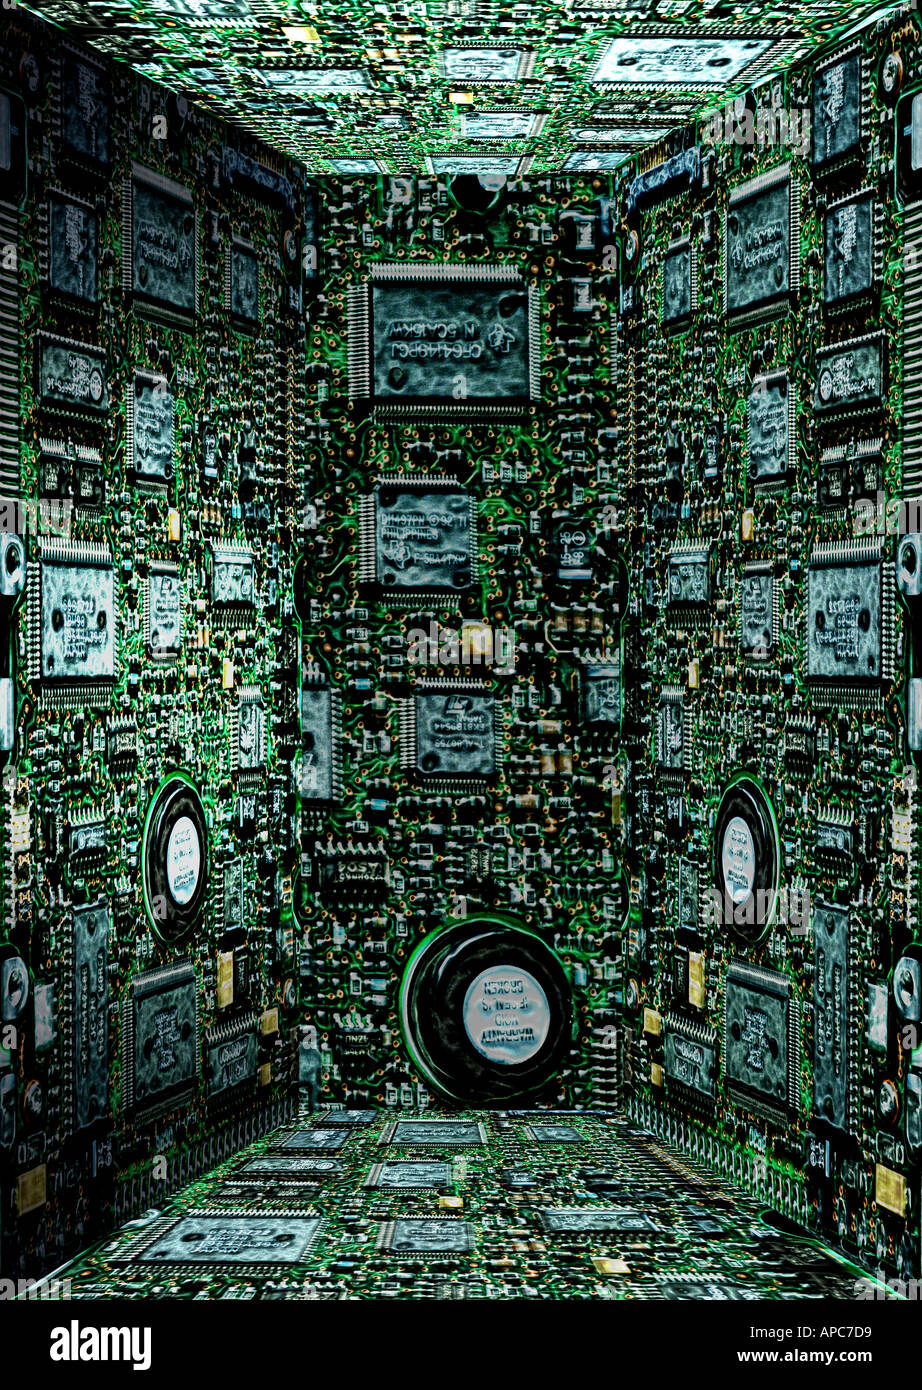 Abbildung Computer Mann Chip Board Panoramaaufnahmen Farbdaten künstlichen Raum drei dimensionalen Würfel Drähte Elektronik moderne Stockfoto